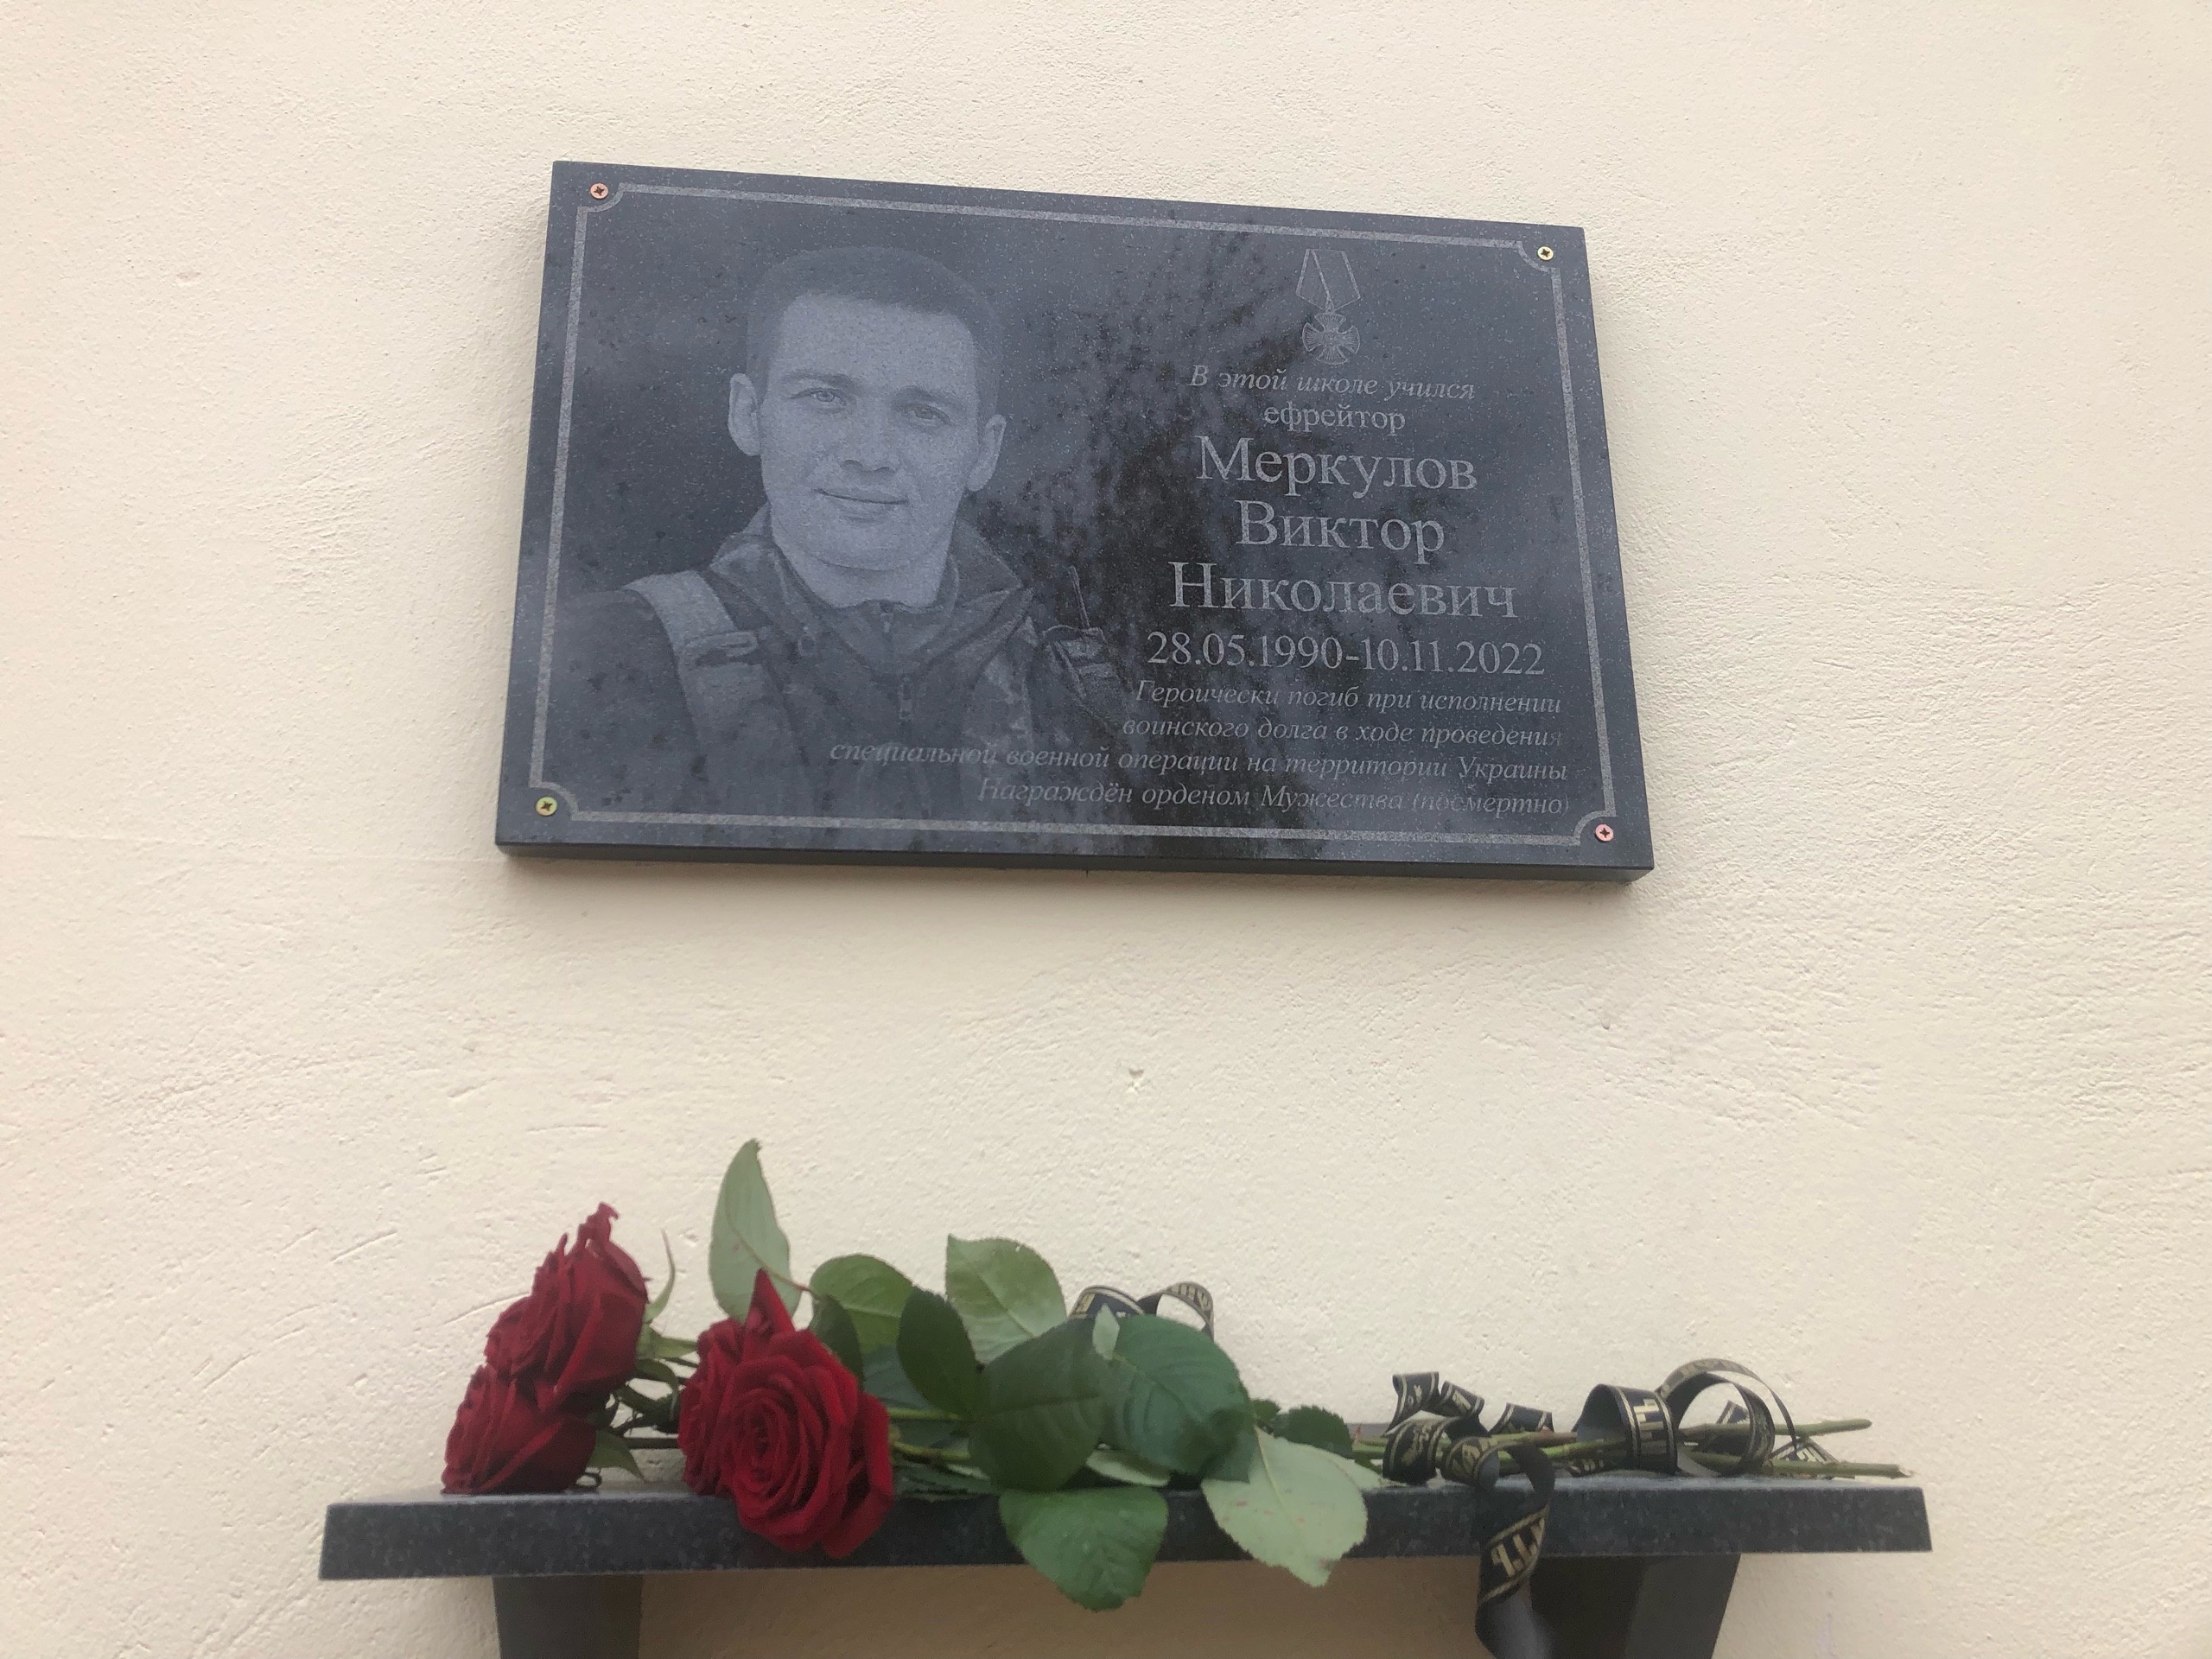 В память о Меркулове Викторе Николаевиче.